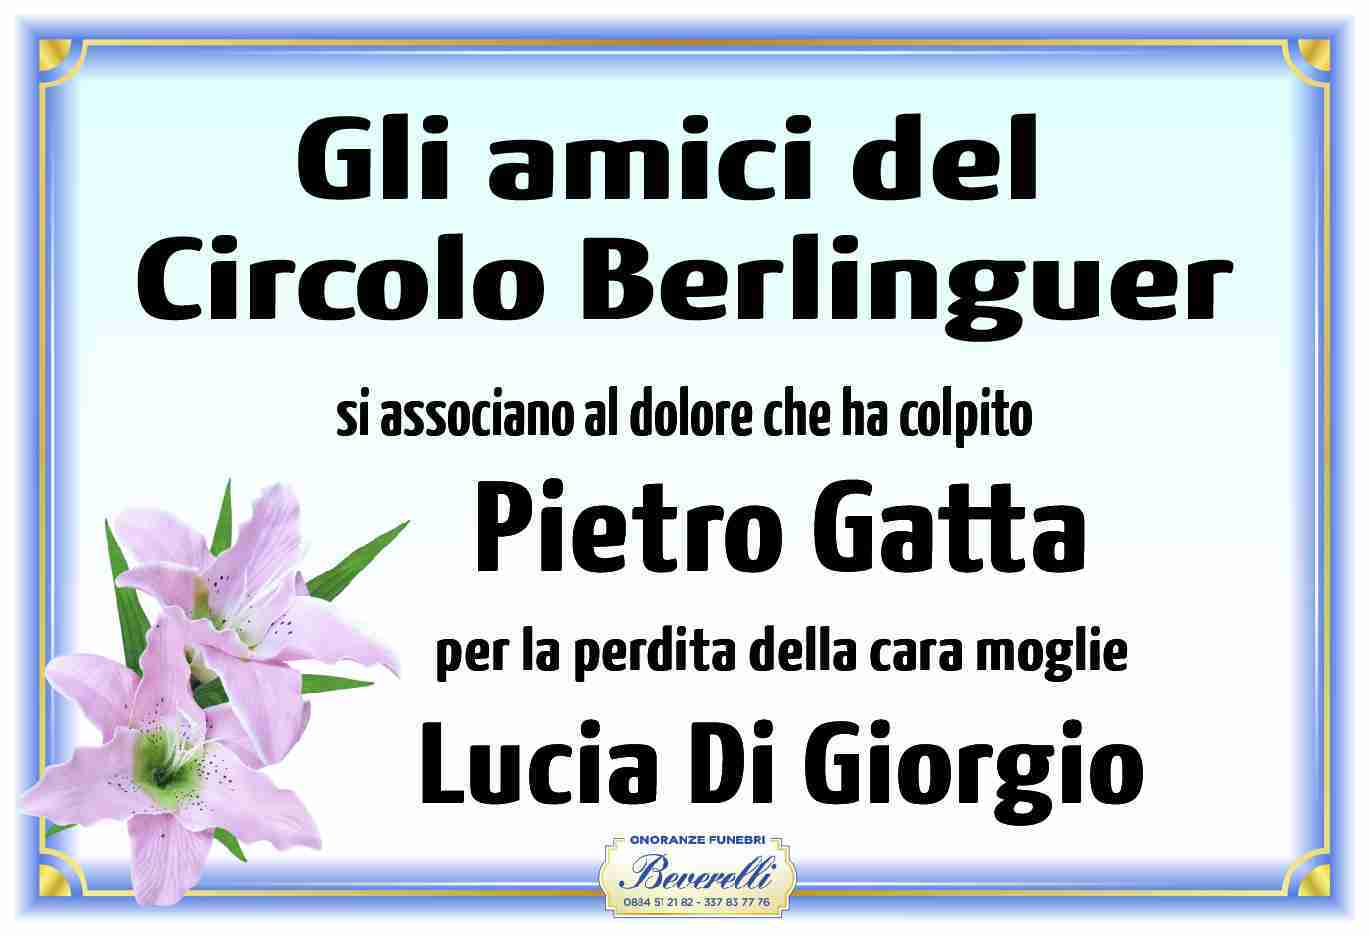 Lucia Di Giorgio